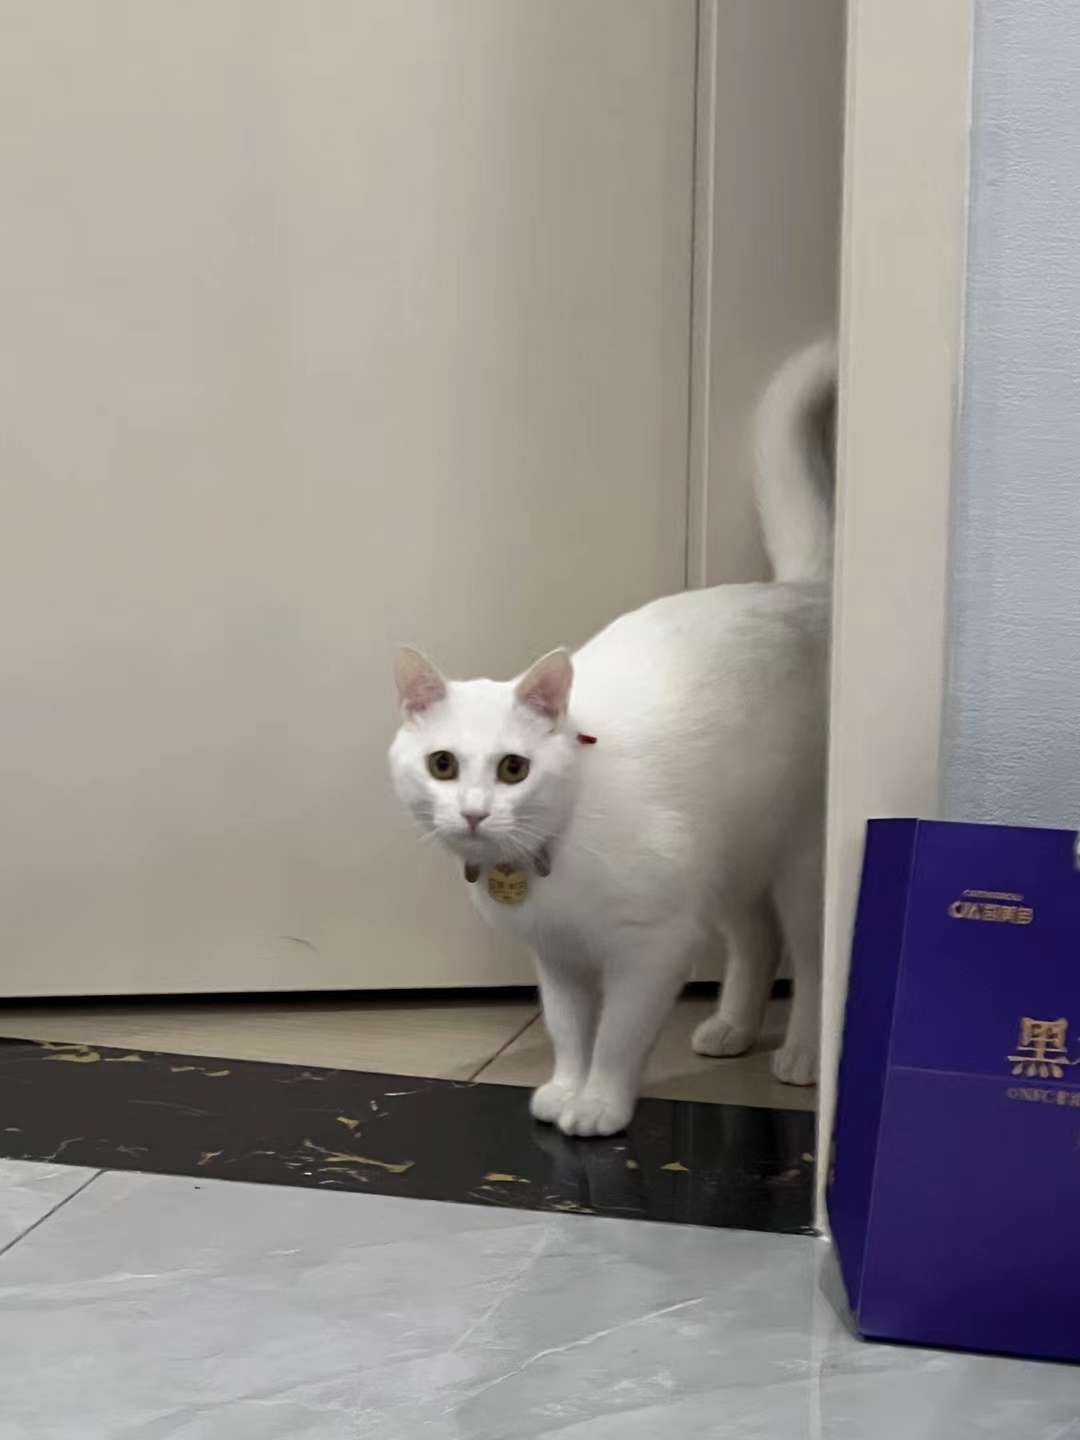 1000元寻猫明珠上海城附近寻纯白猫一只